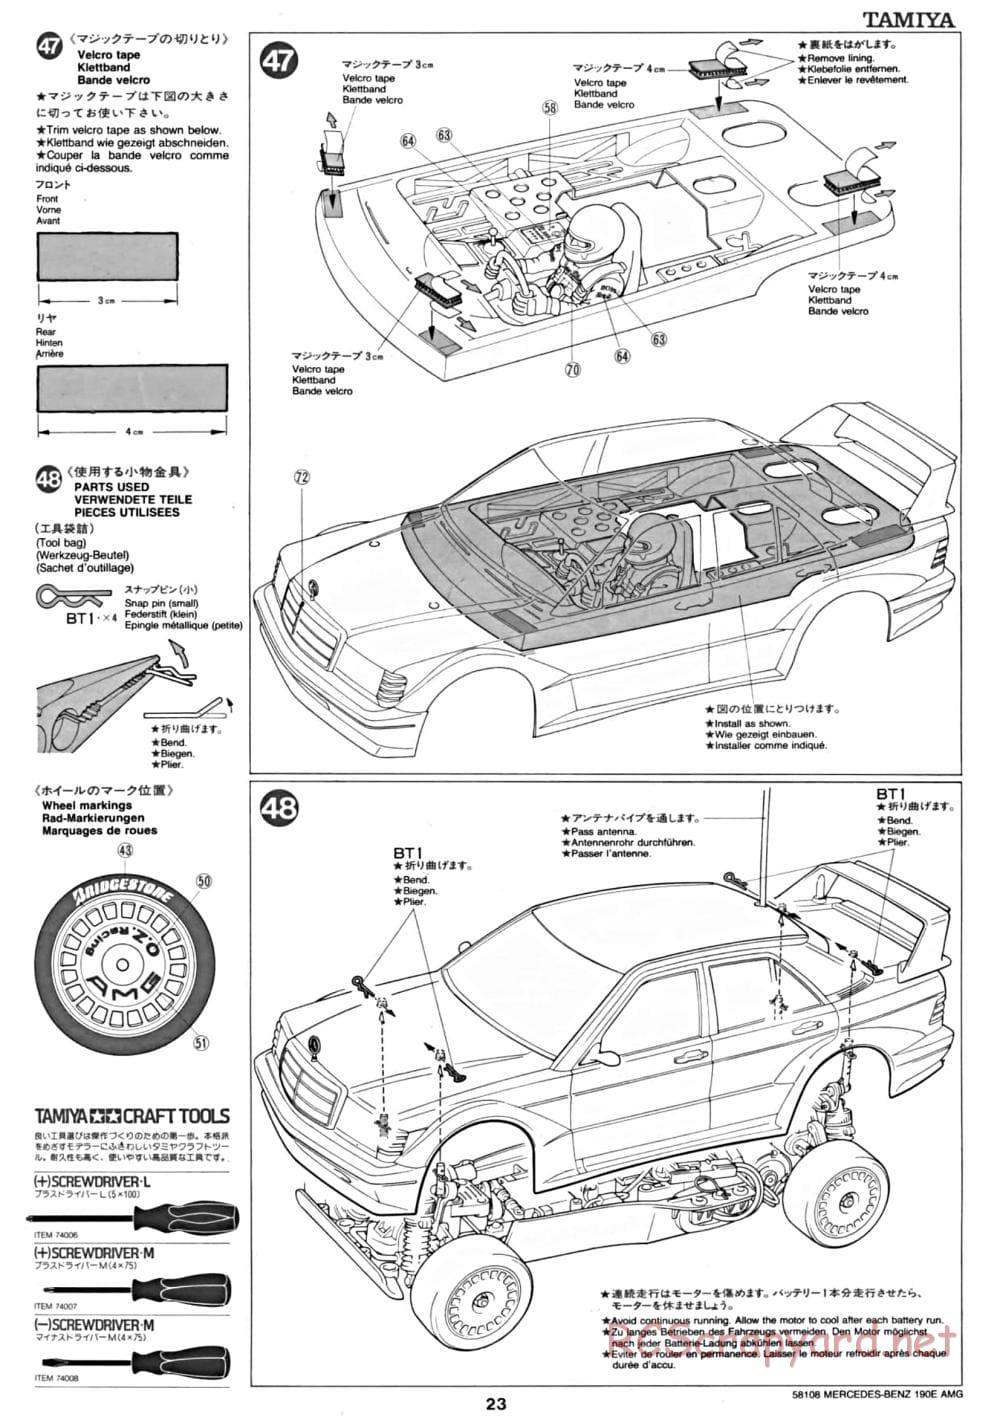 Tamiya - Mercedes Benz 190E Evo.II AMG - TA-01 Chassis - Manual - Page 23